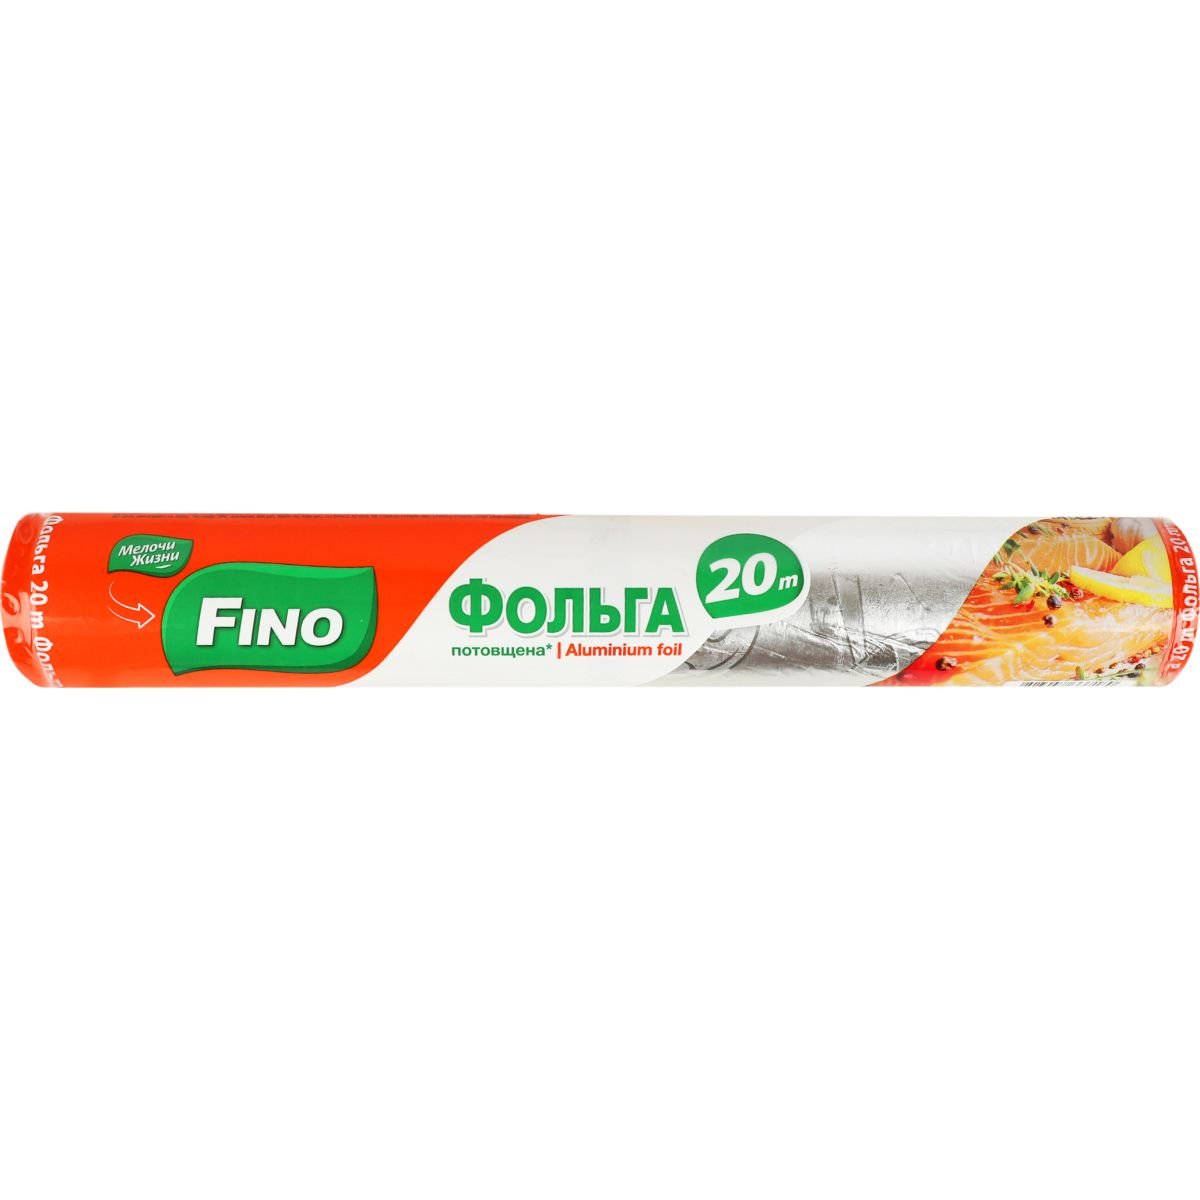 Фольга алюминиевая Fino утолщенная 20 м - фото 1